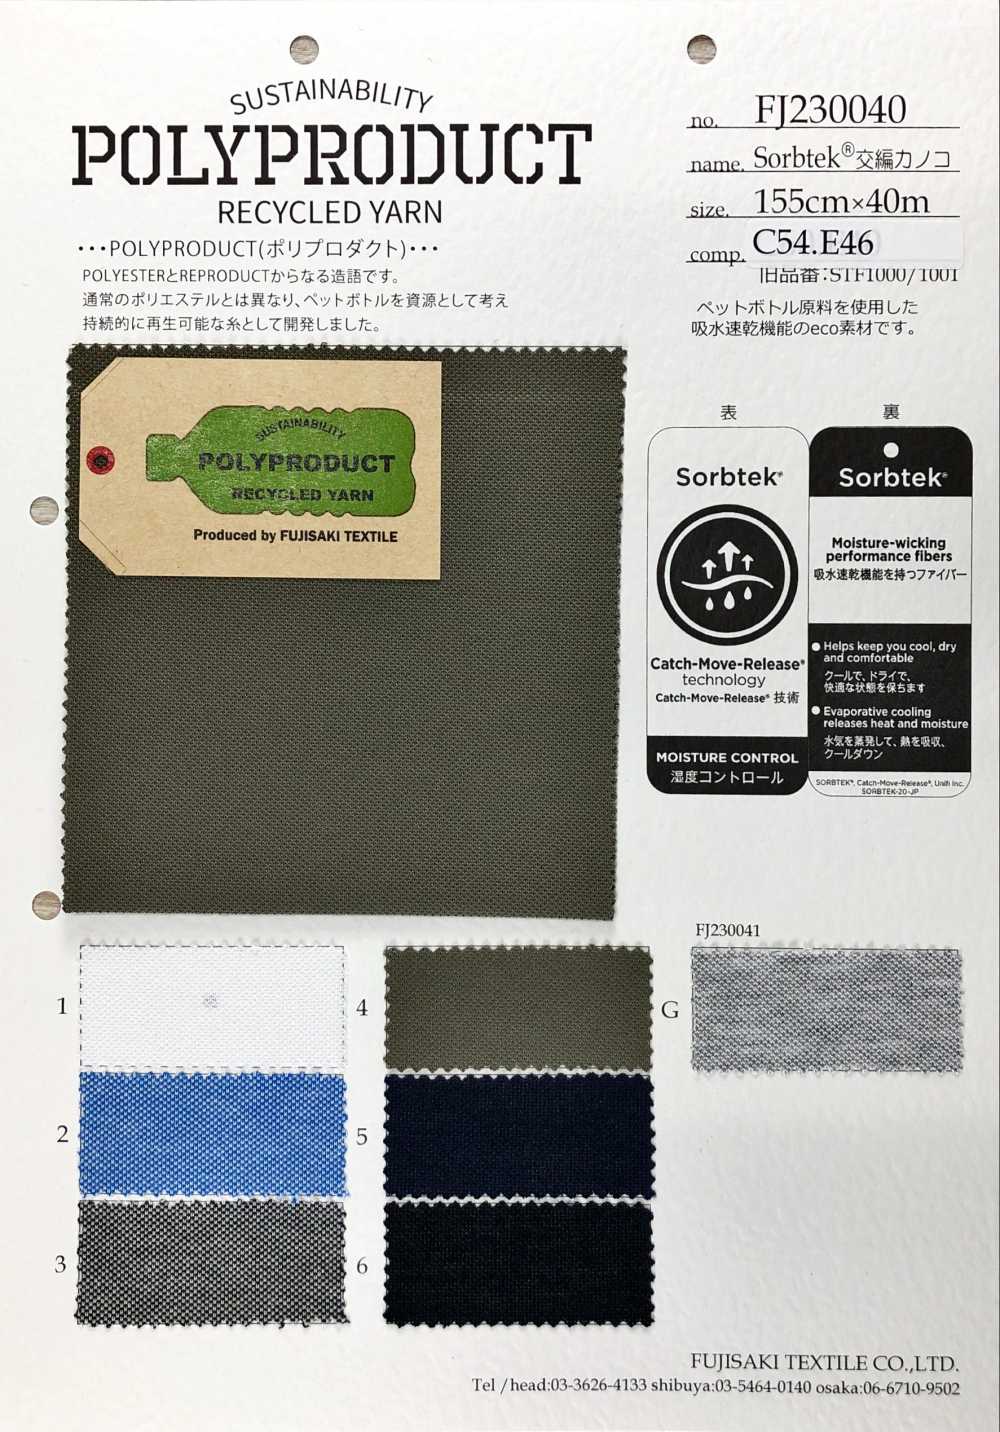 FJ230040 Sorbtek Intertwined Moss Stitch[Textile / Fabric] Fujisaki Textile